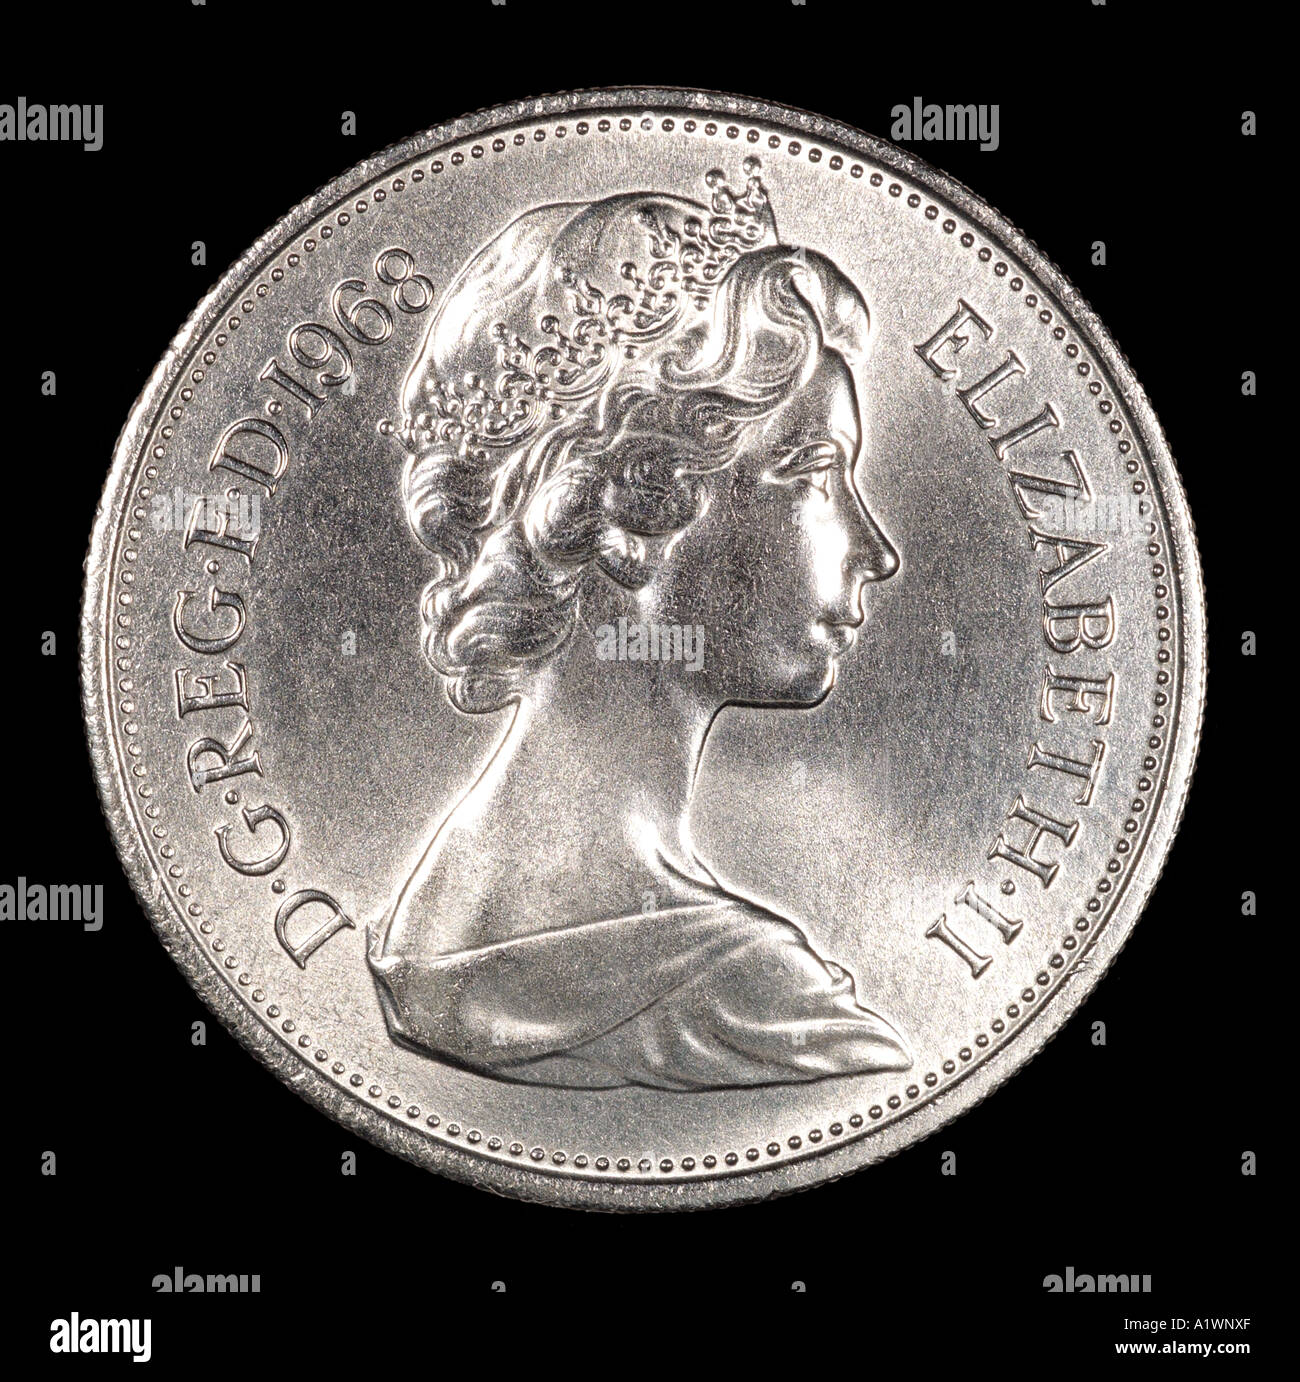 La reine Elizabeth II Regina Reg 2 virgule 10 dix nouveaux pence P droit face aux jeunes de la couronne lumineuse argent profil Banque D'Images